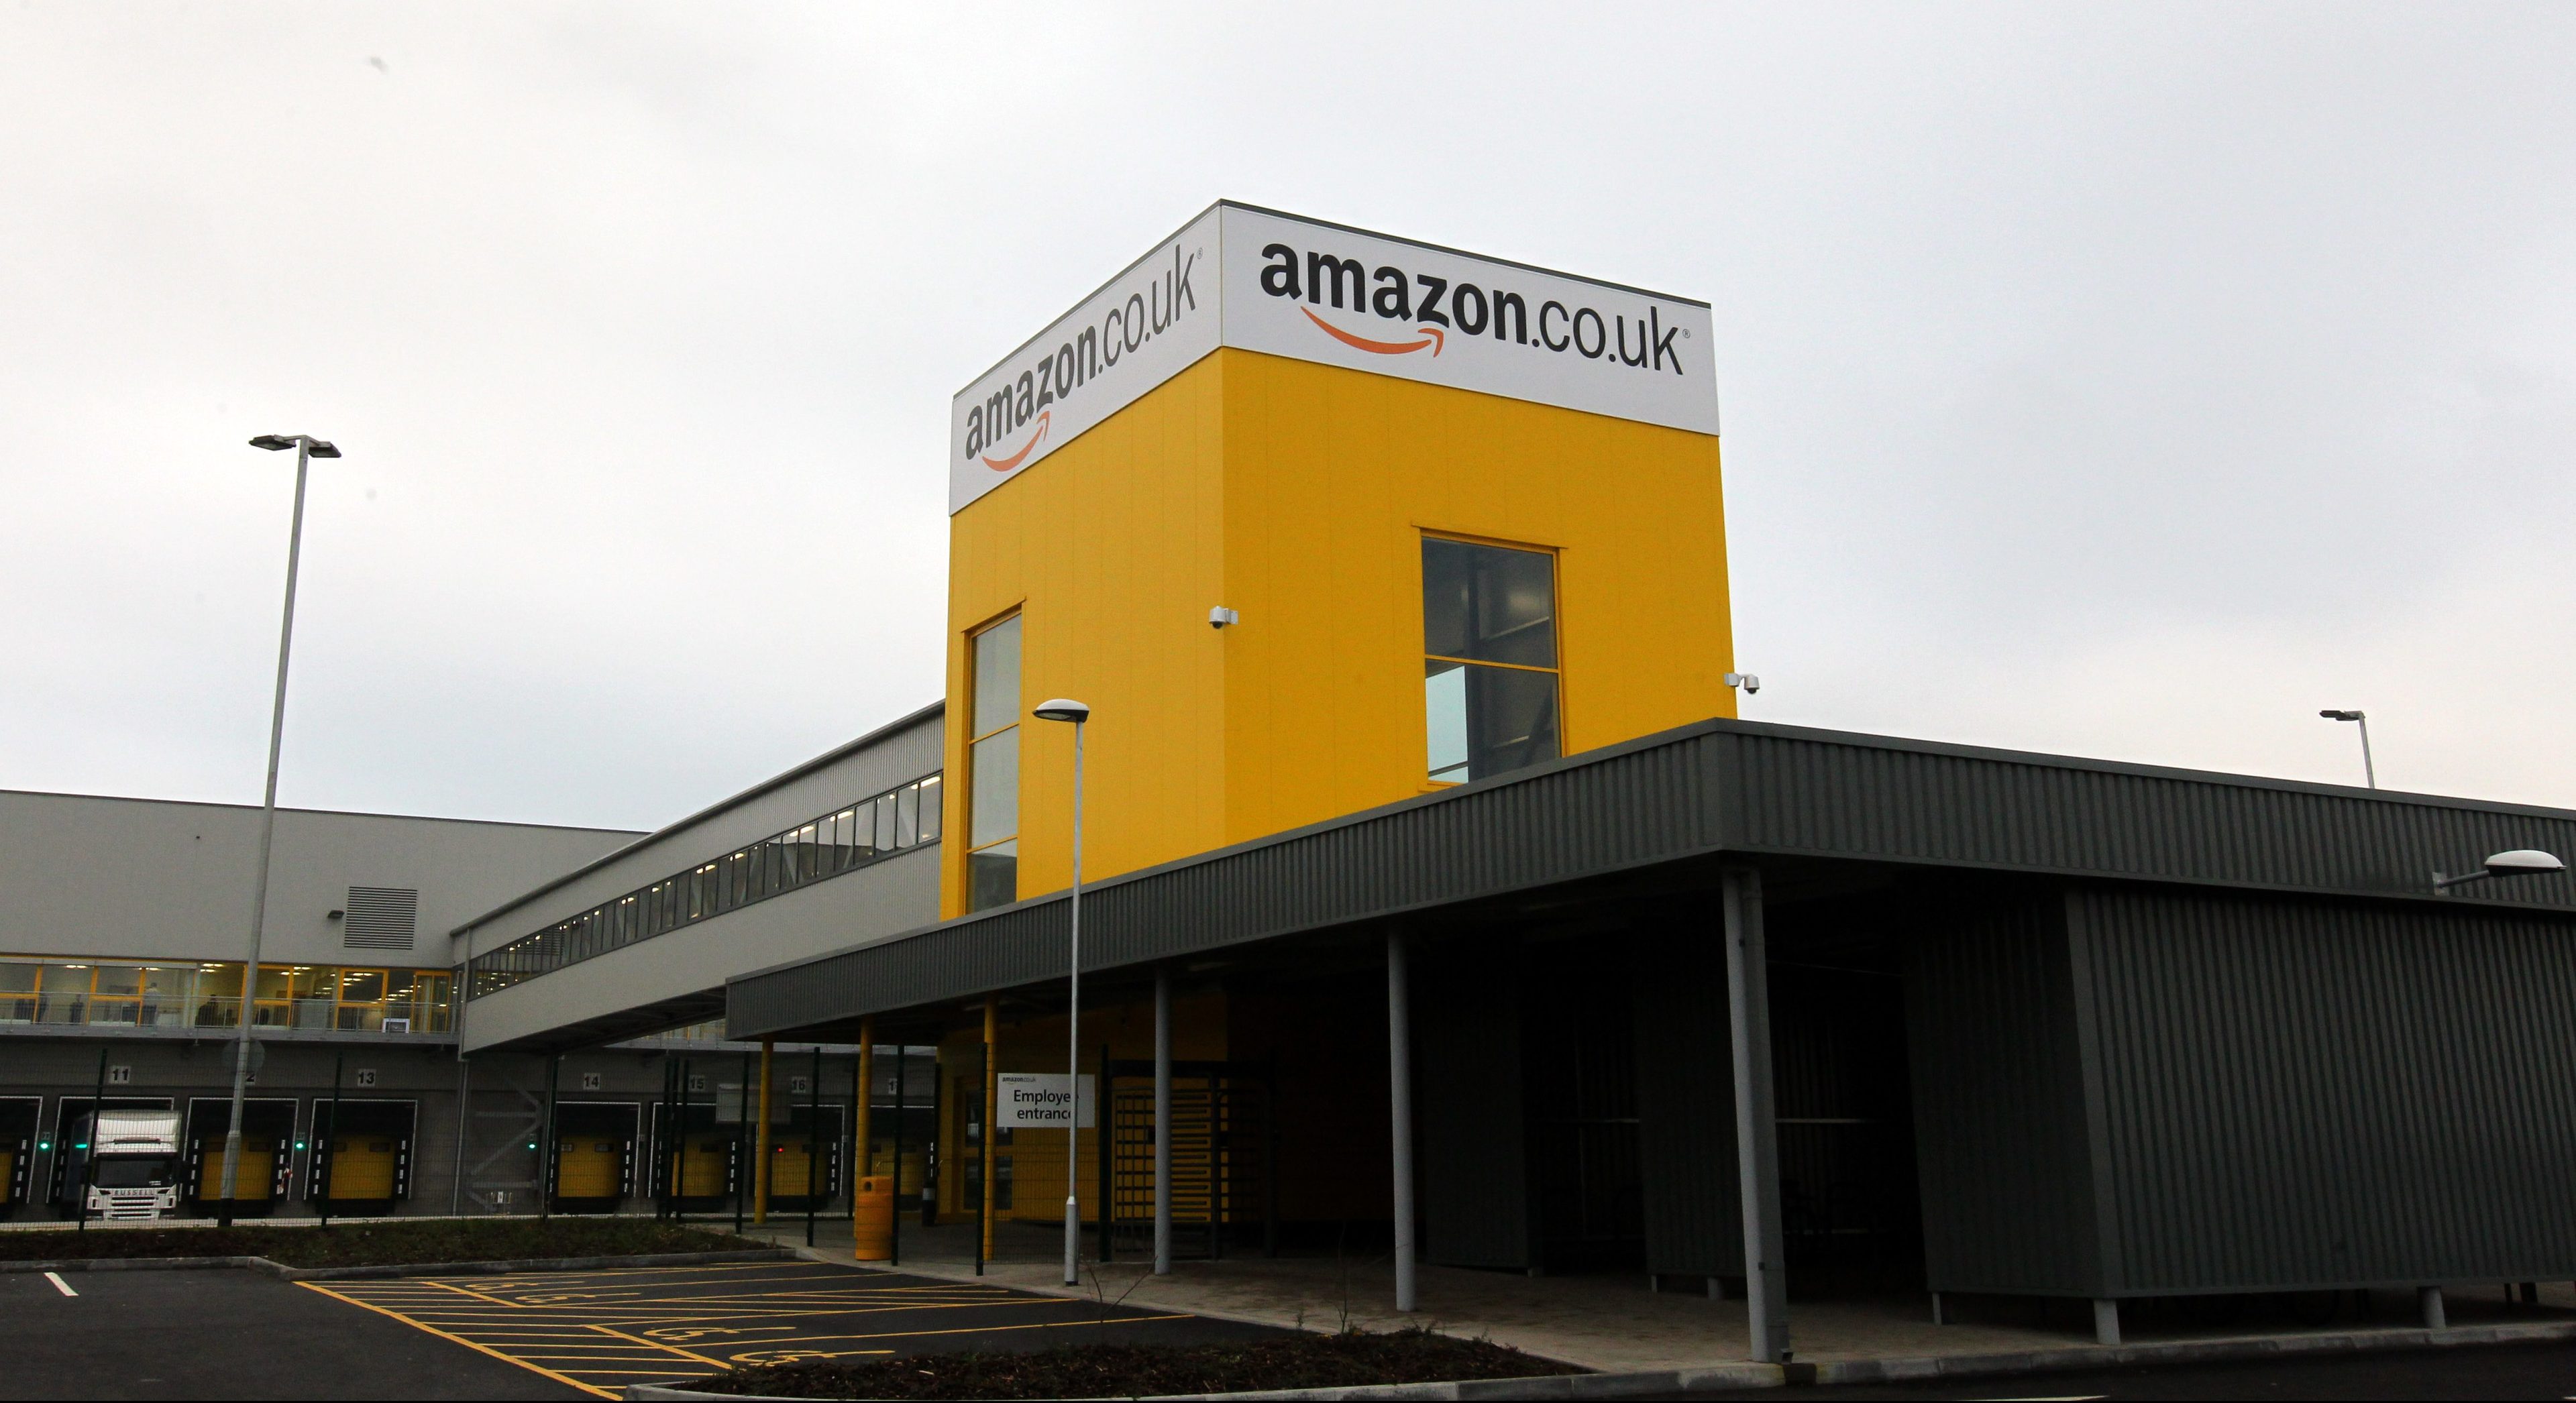 Amazon's Dunfermline fulfilment centre